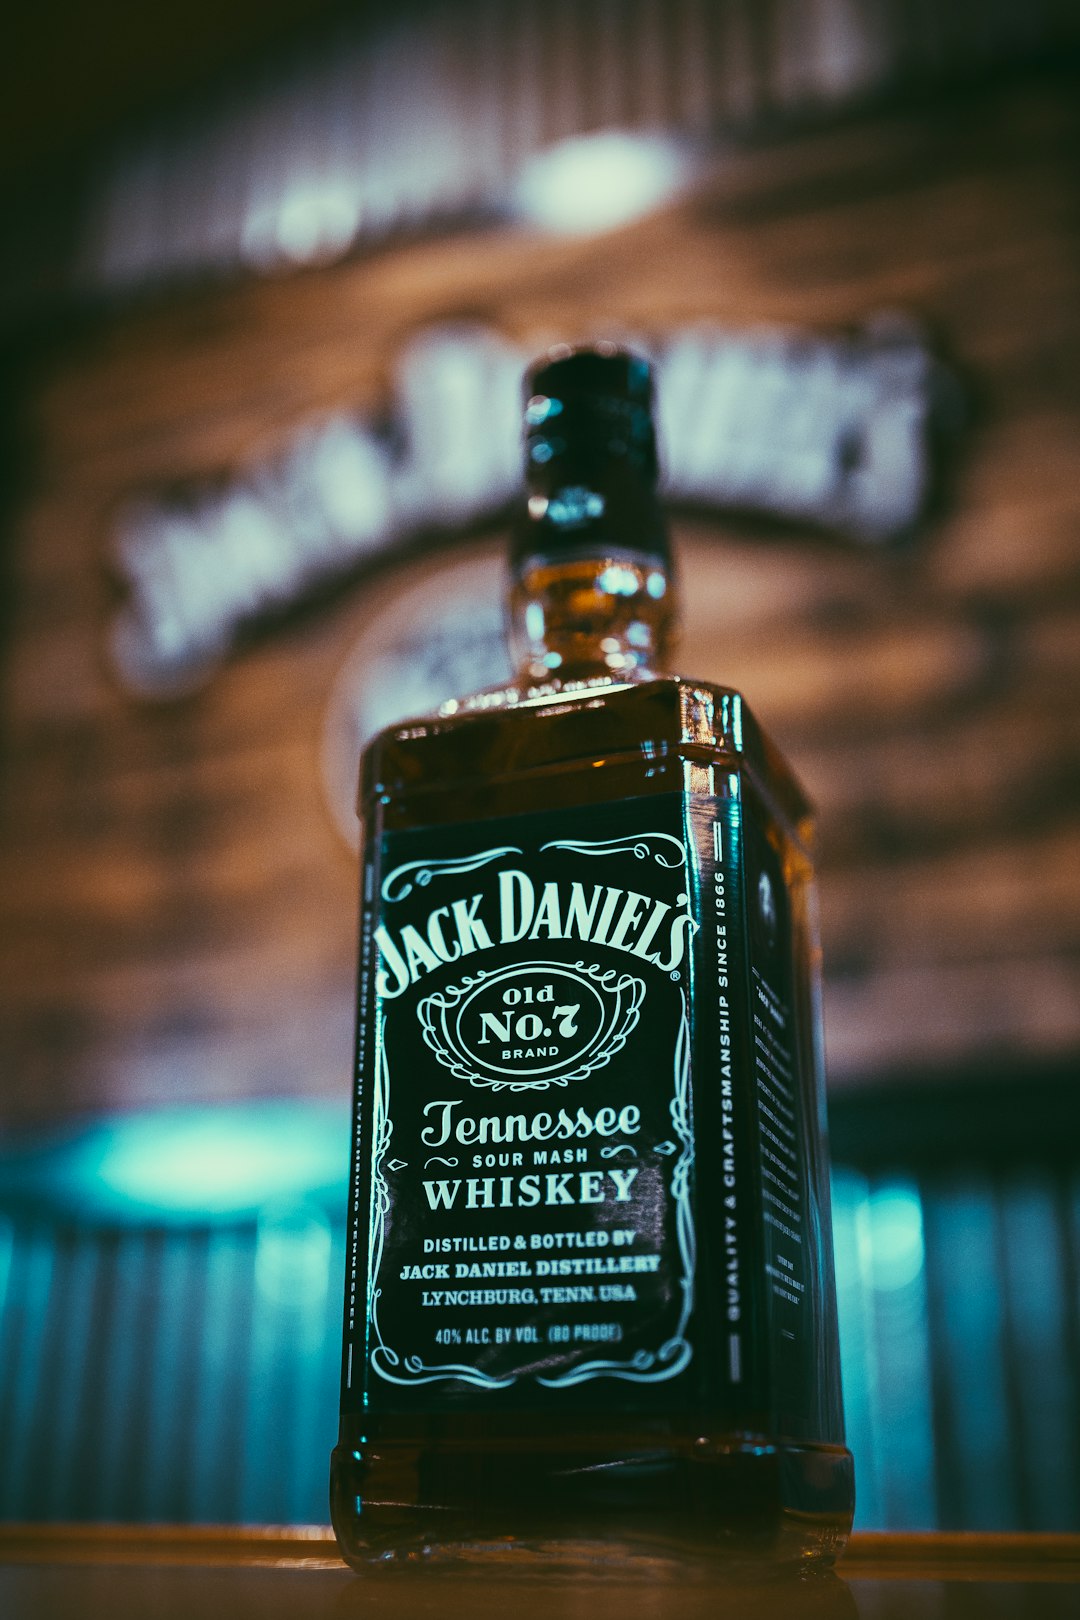 Jack Daniel's Tennessee glass bottle